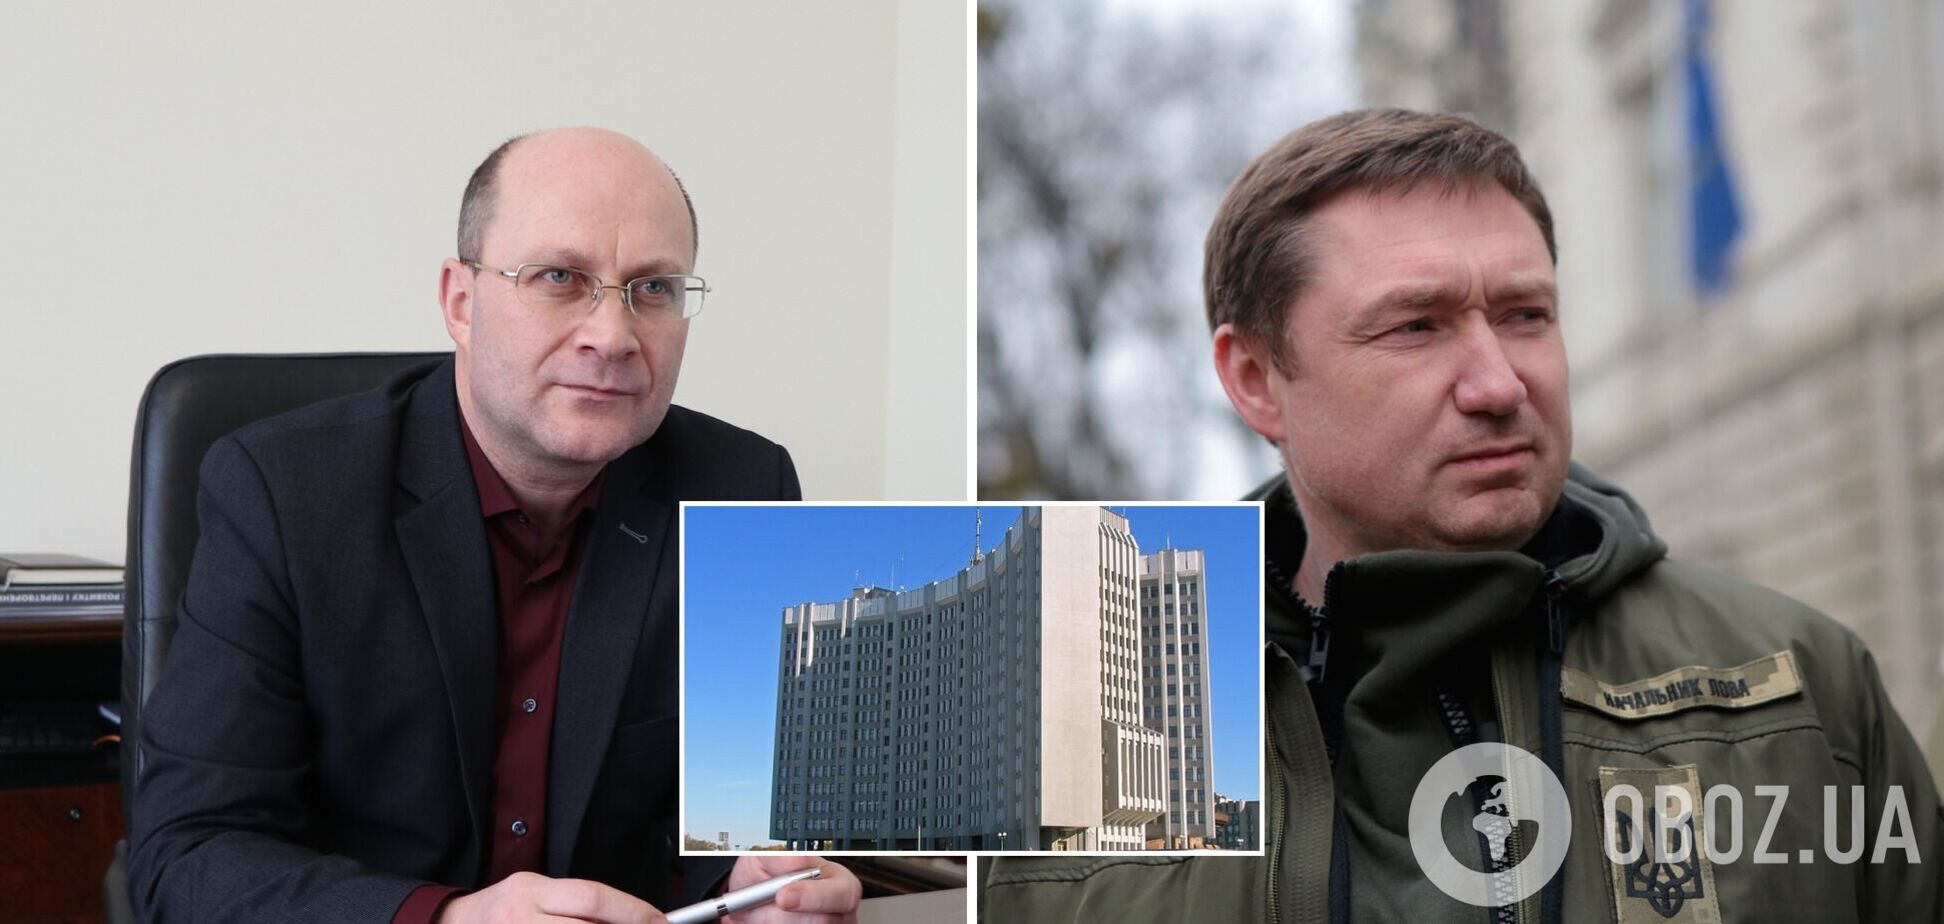 Публичный скандал во Львовской области: губернатор пытался назначить на должность 'человека Медведчука'